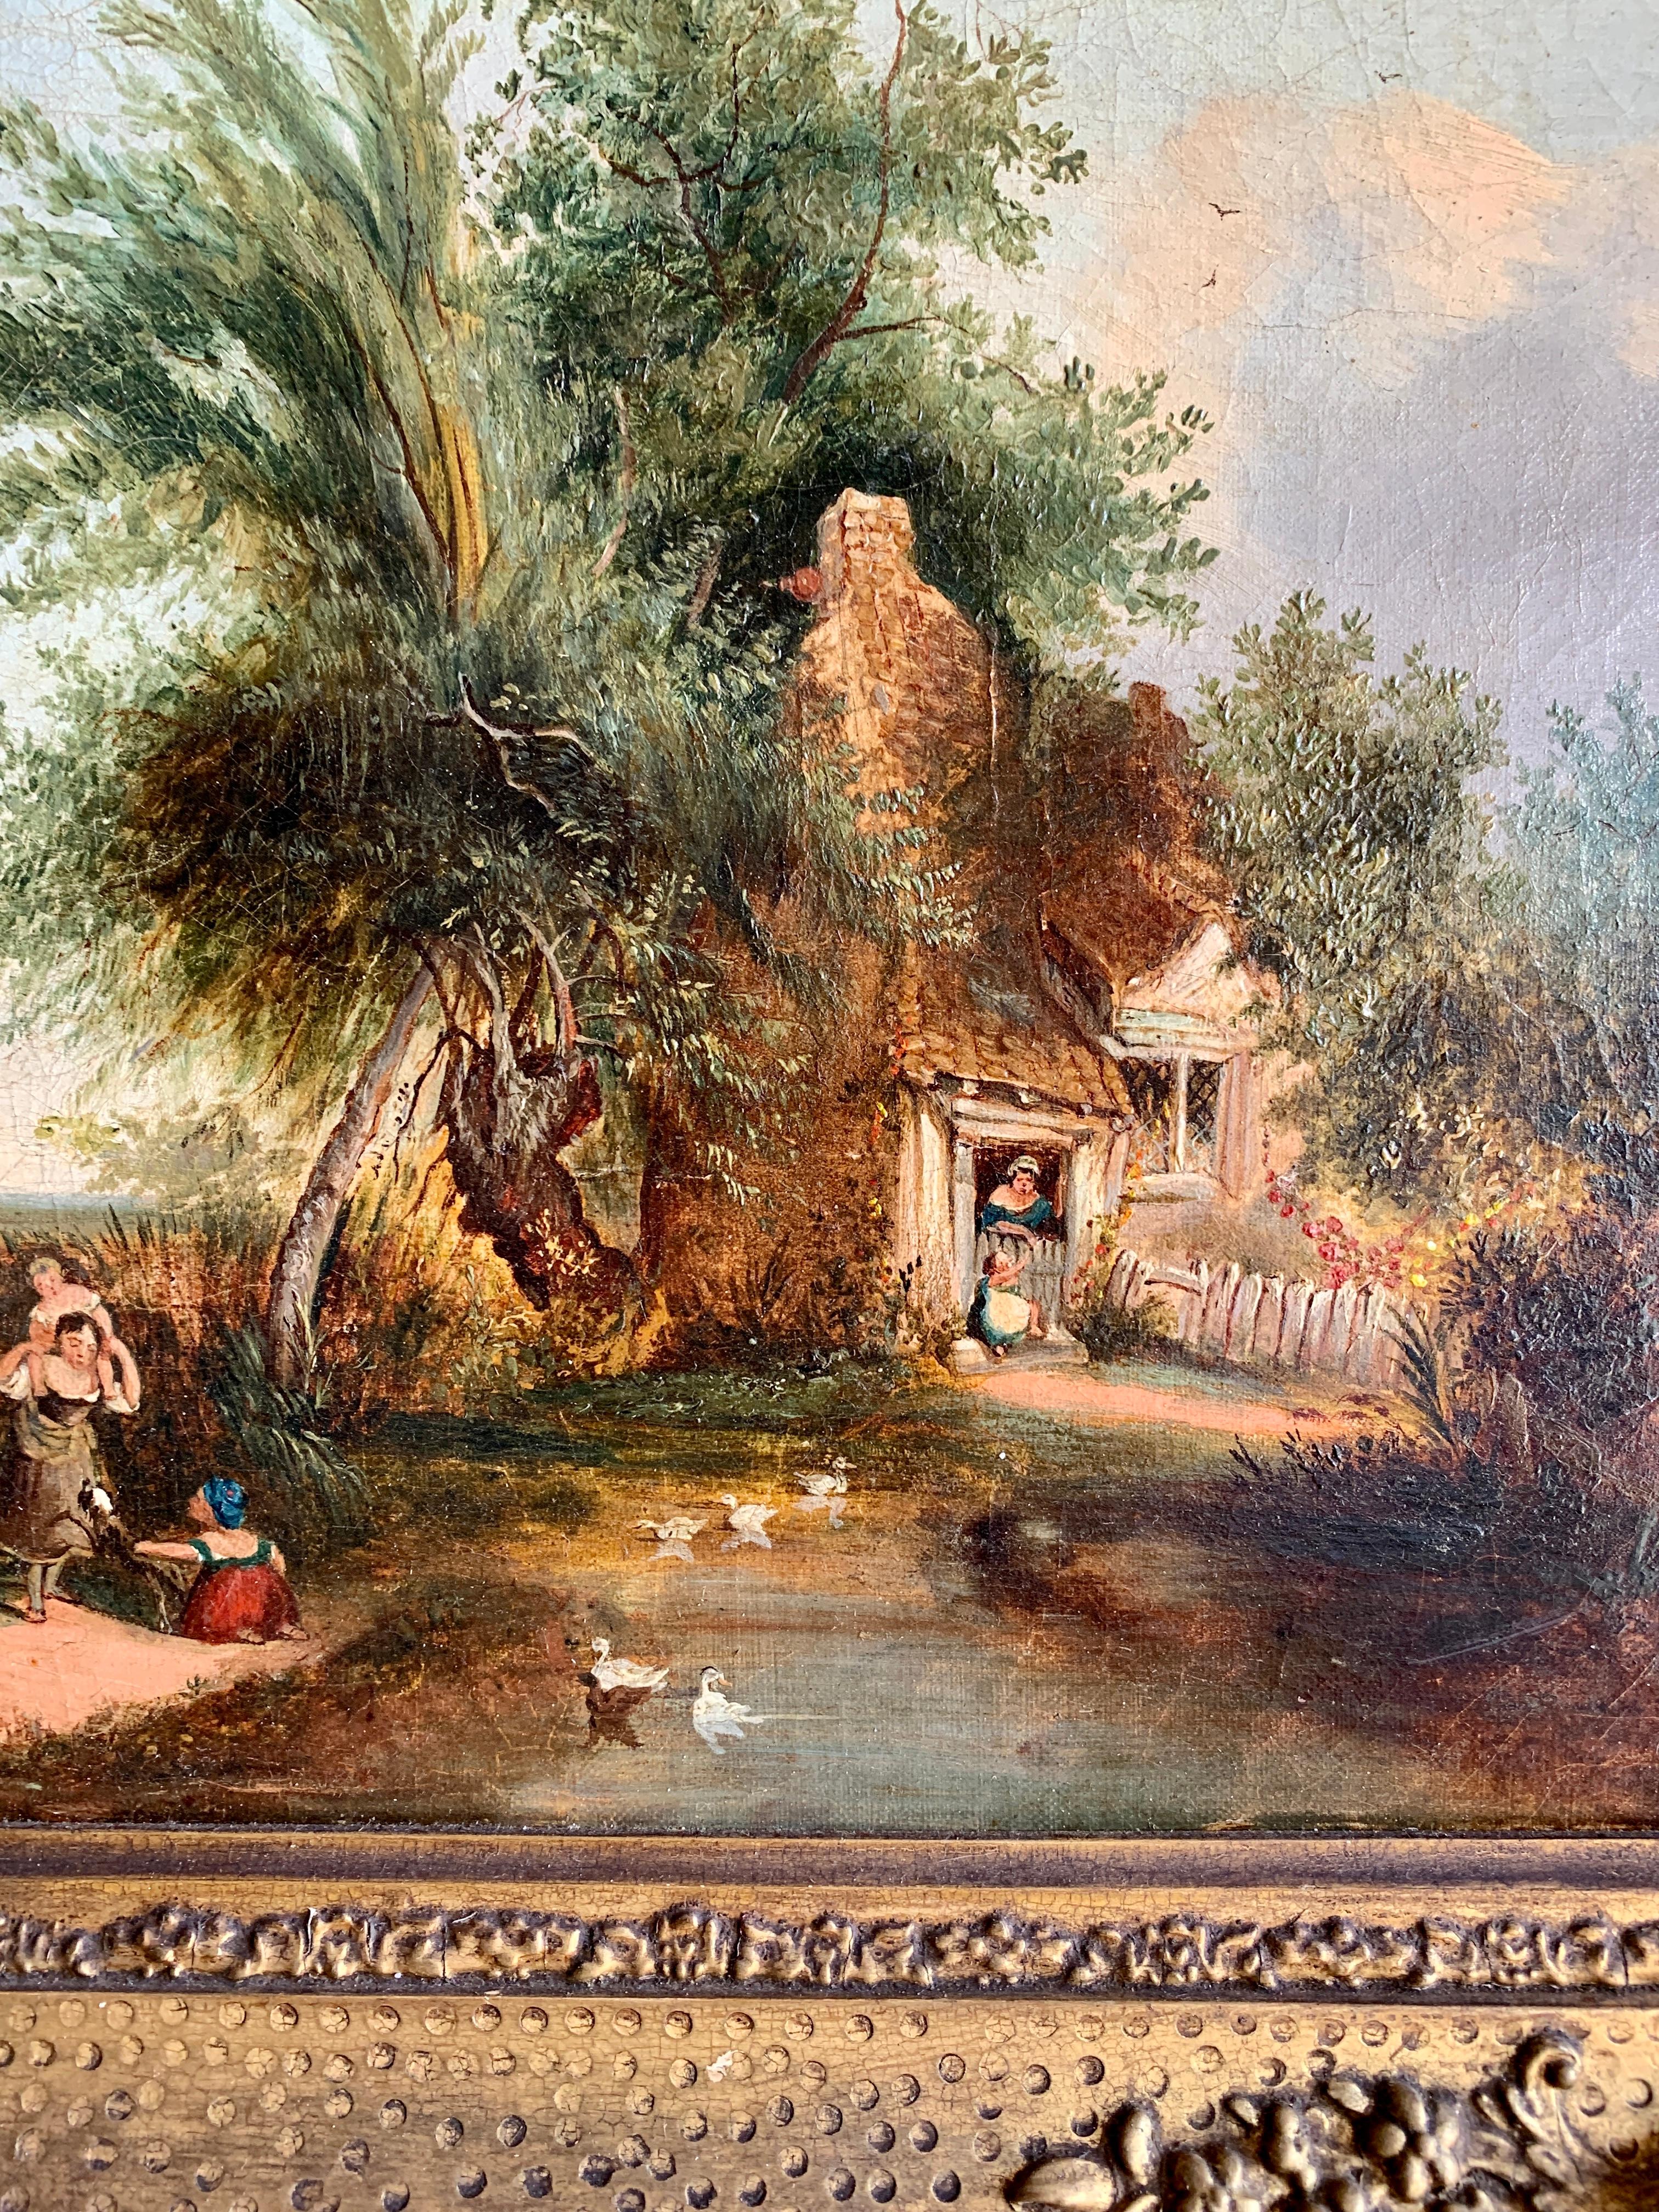 Paysage de cottage d'art populaire anglais du 19ème siècle avec des personnages jouant au bord d'un étang - Painting de Unknown